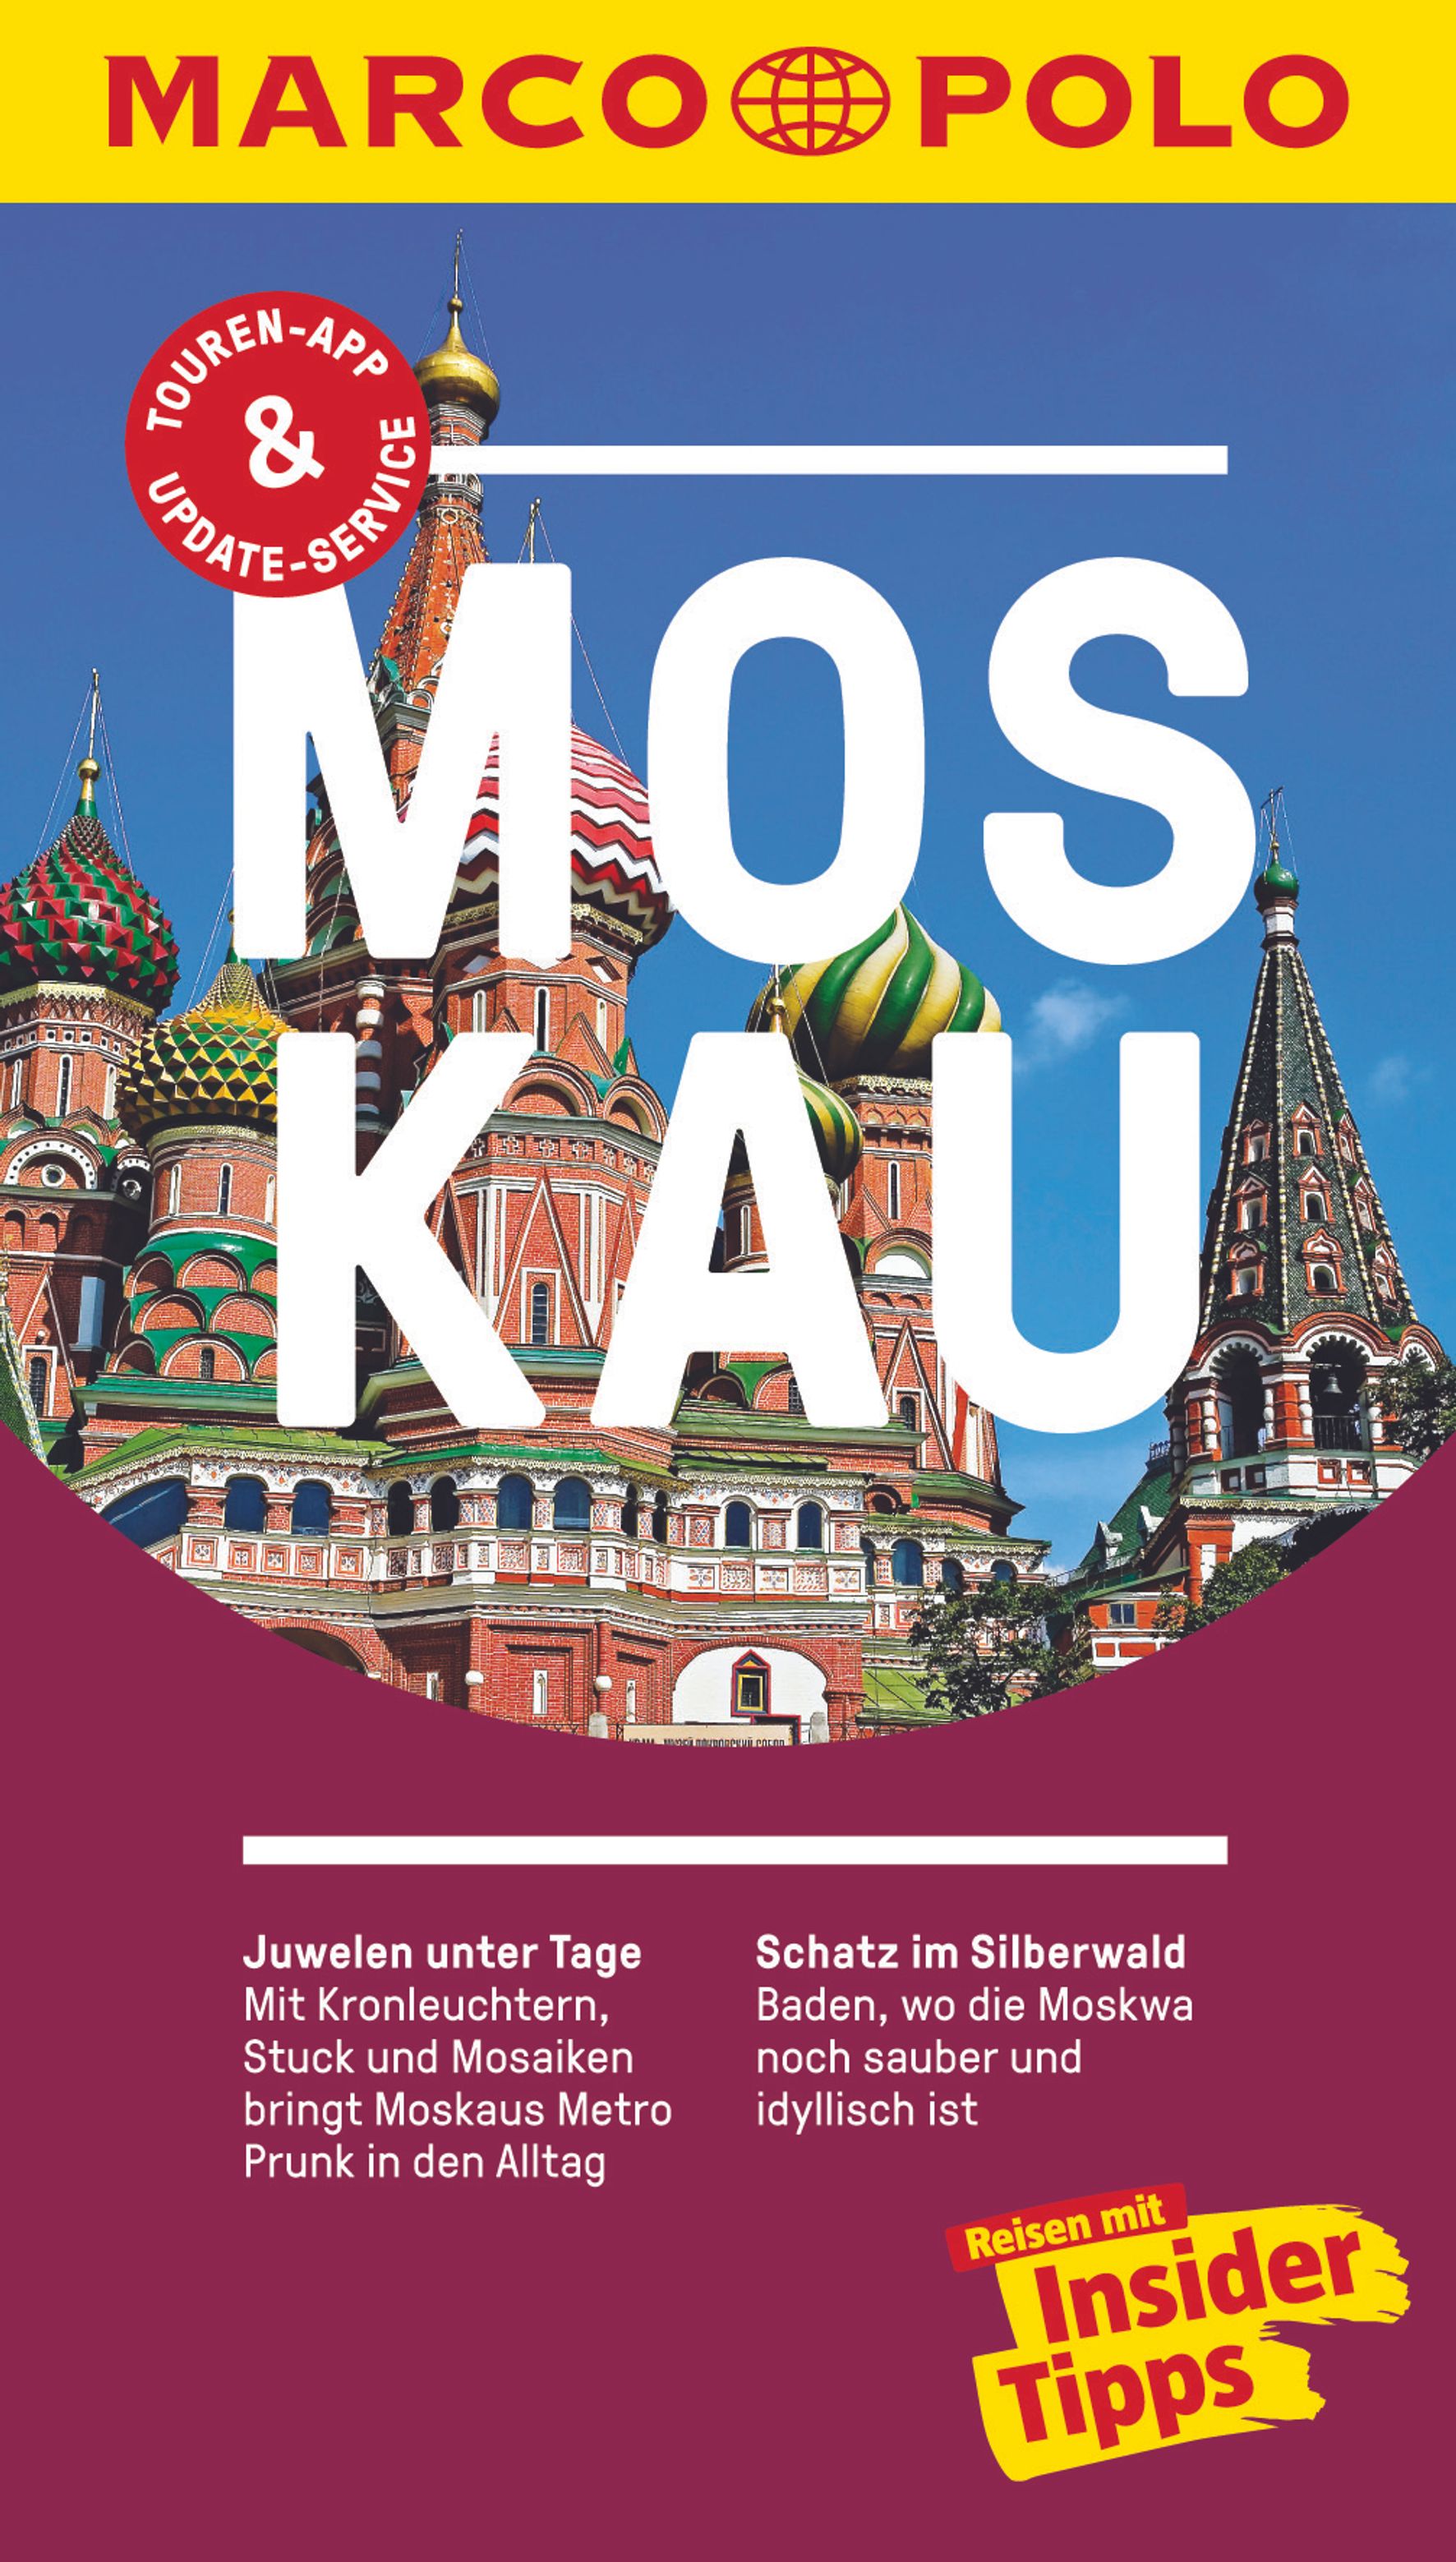 MAIRDUMONT Moskau (eBook)